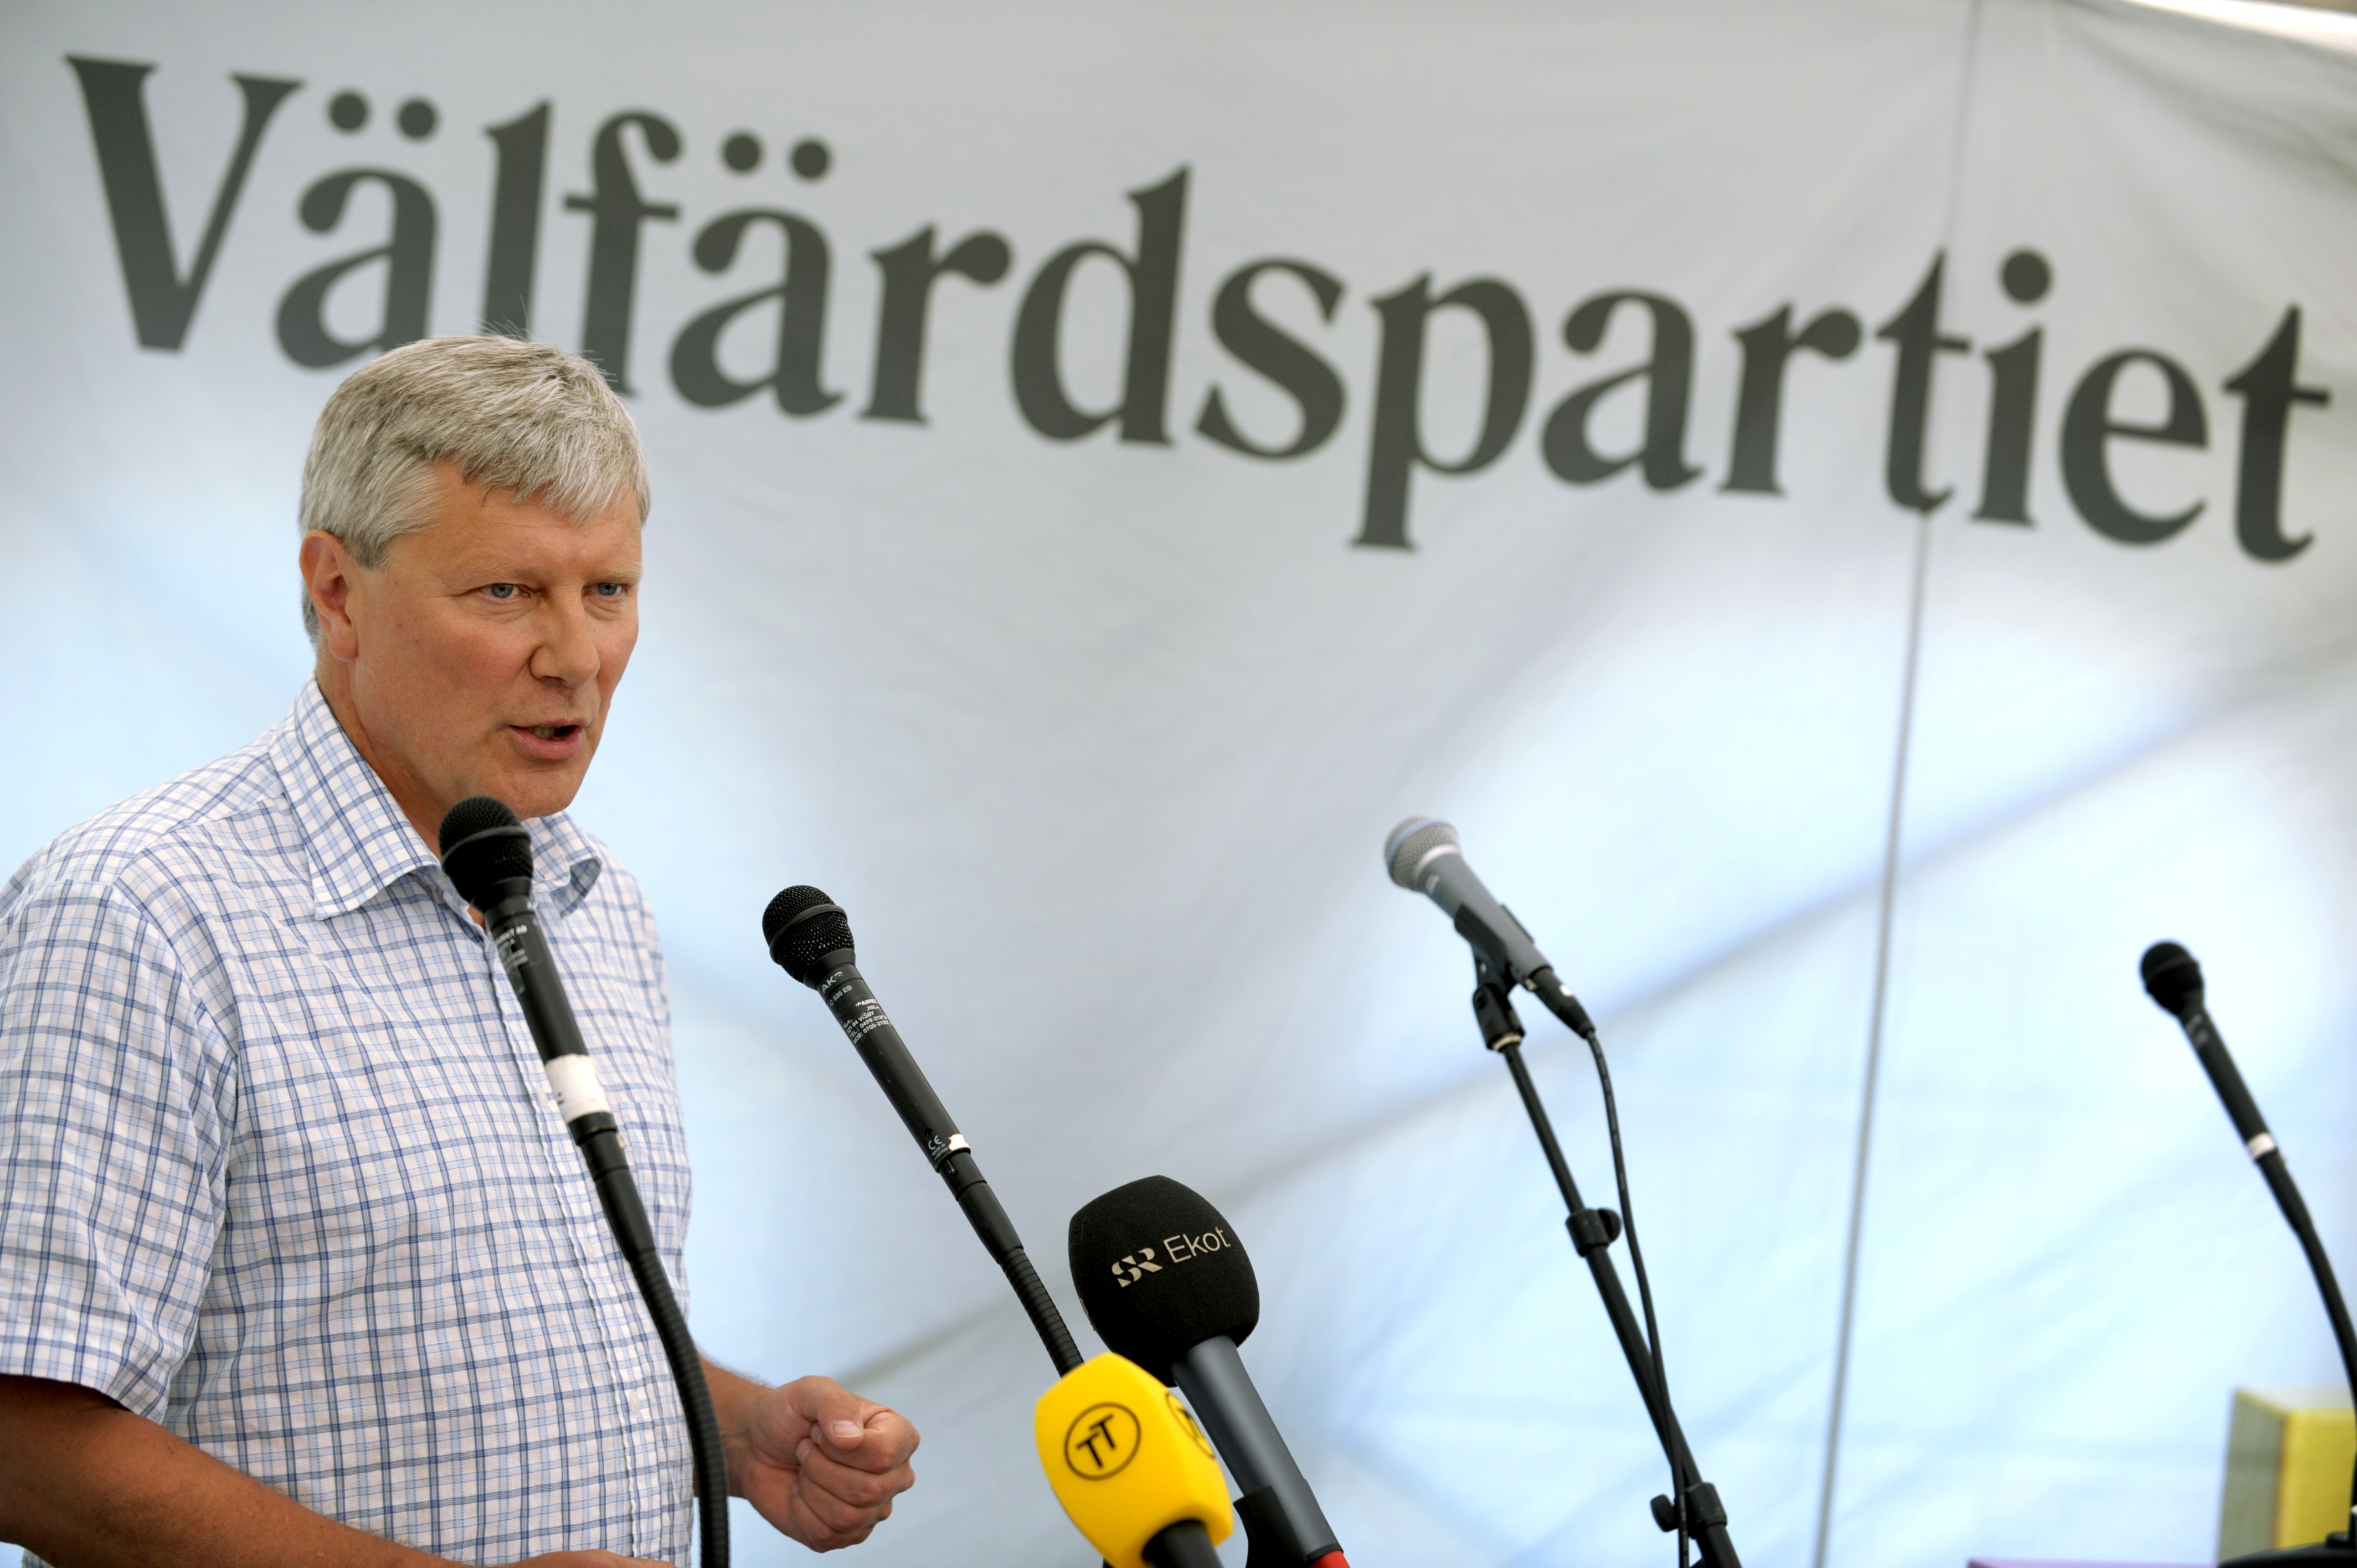 vänsterpartiet, Riksdagsvalet 2010, lars ohly